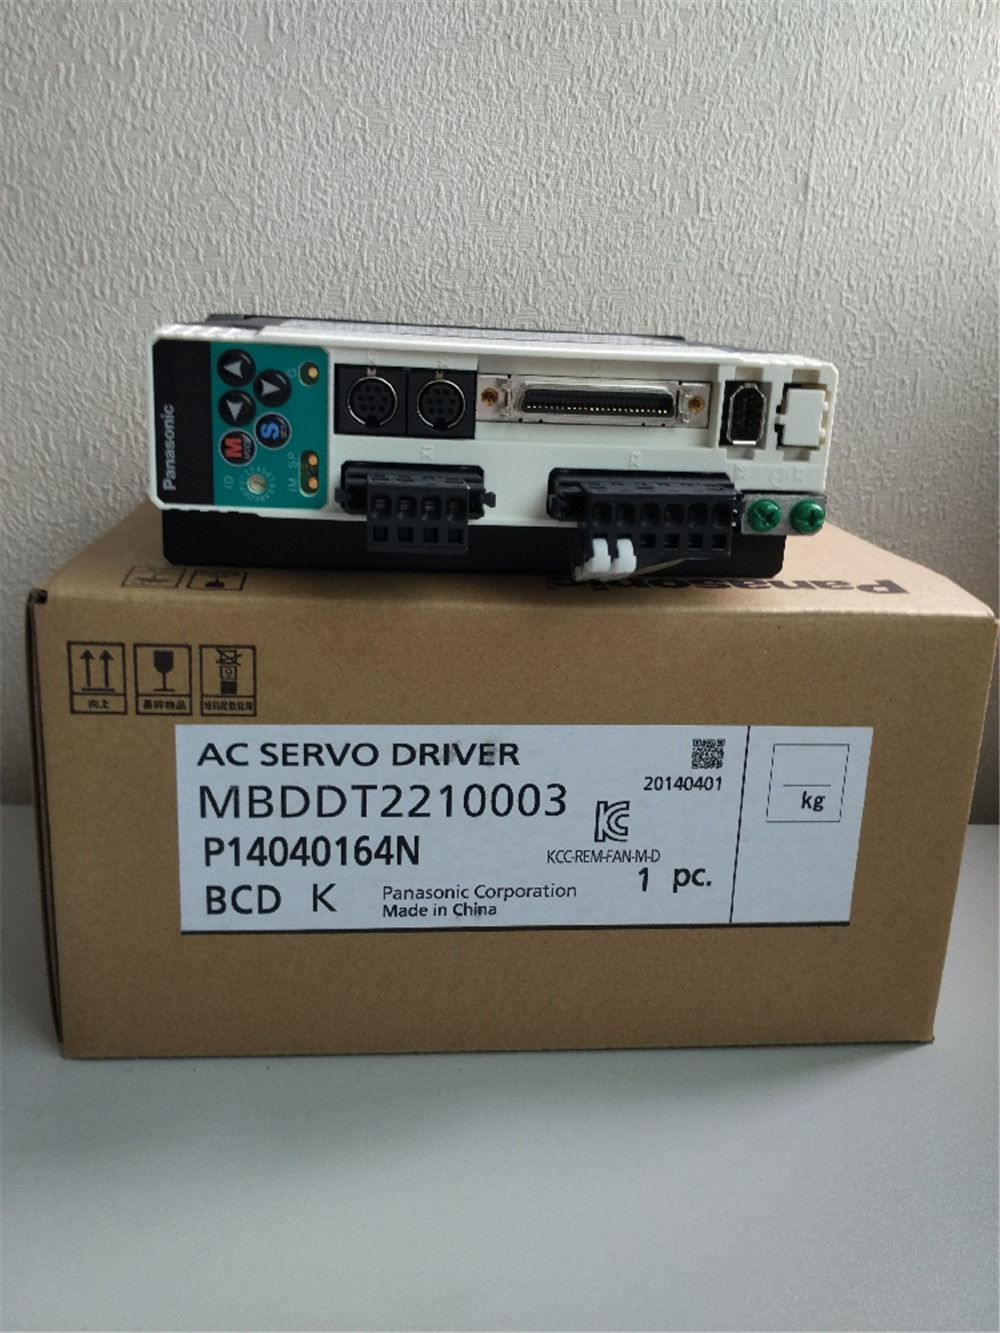 New Original PANASONIC Servo drive MBDDT2210003 in box